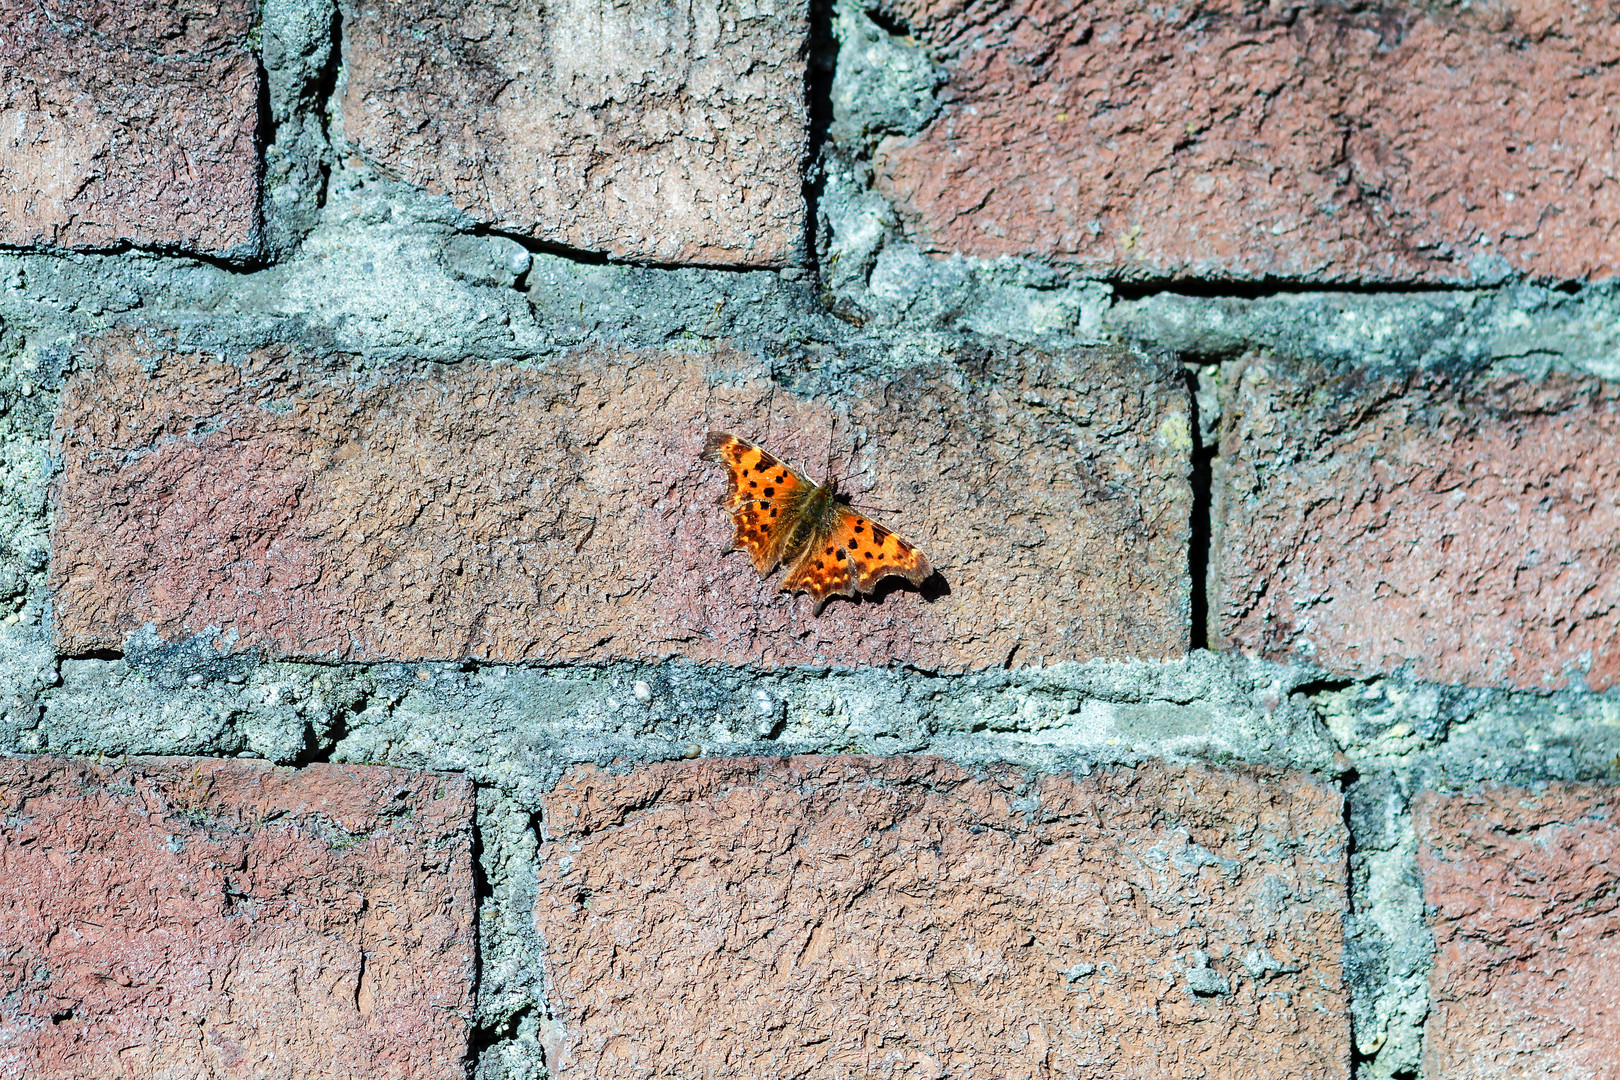 Schmetterling am 09.03.14